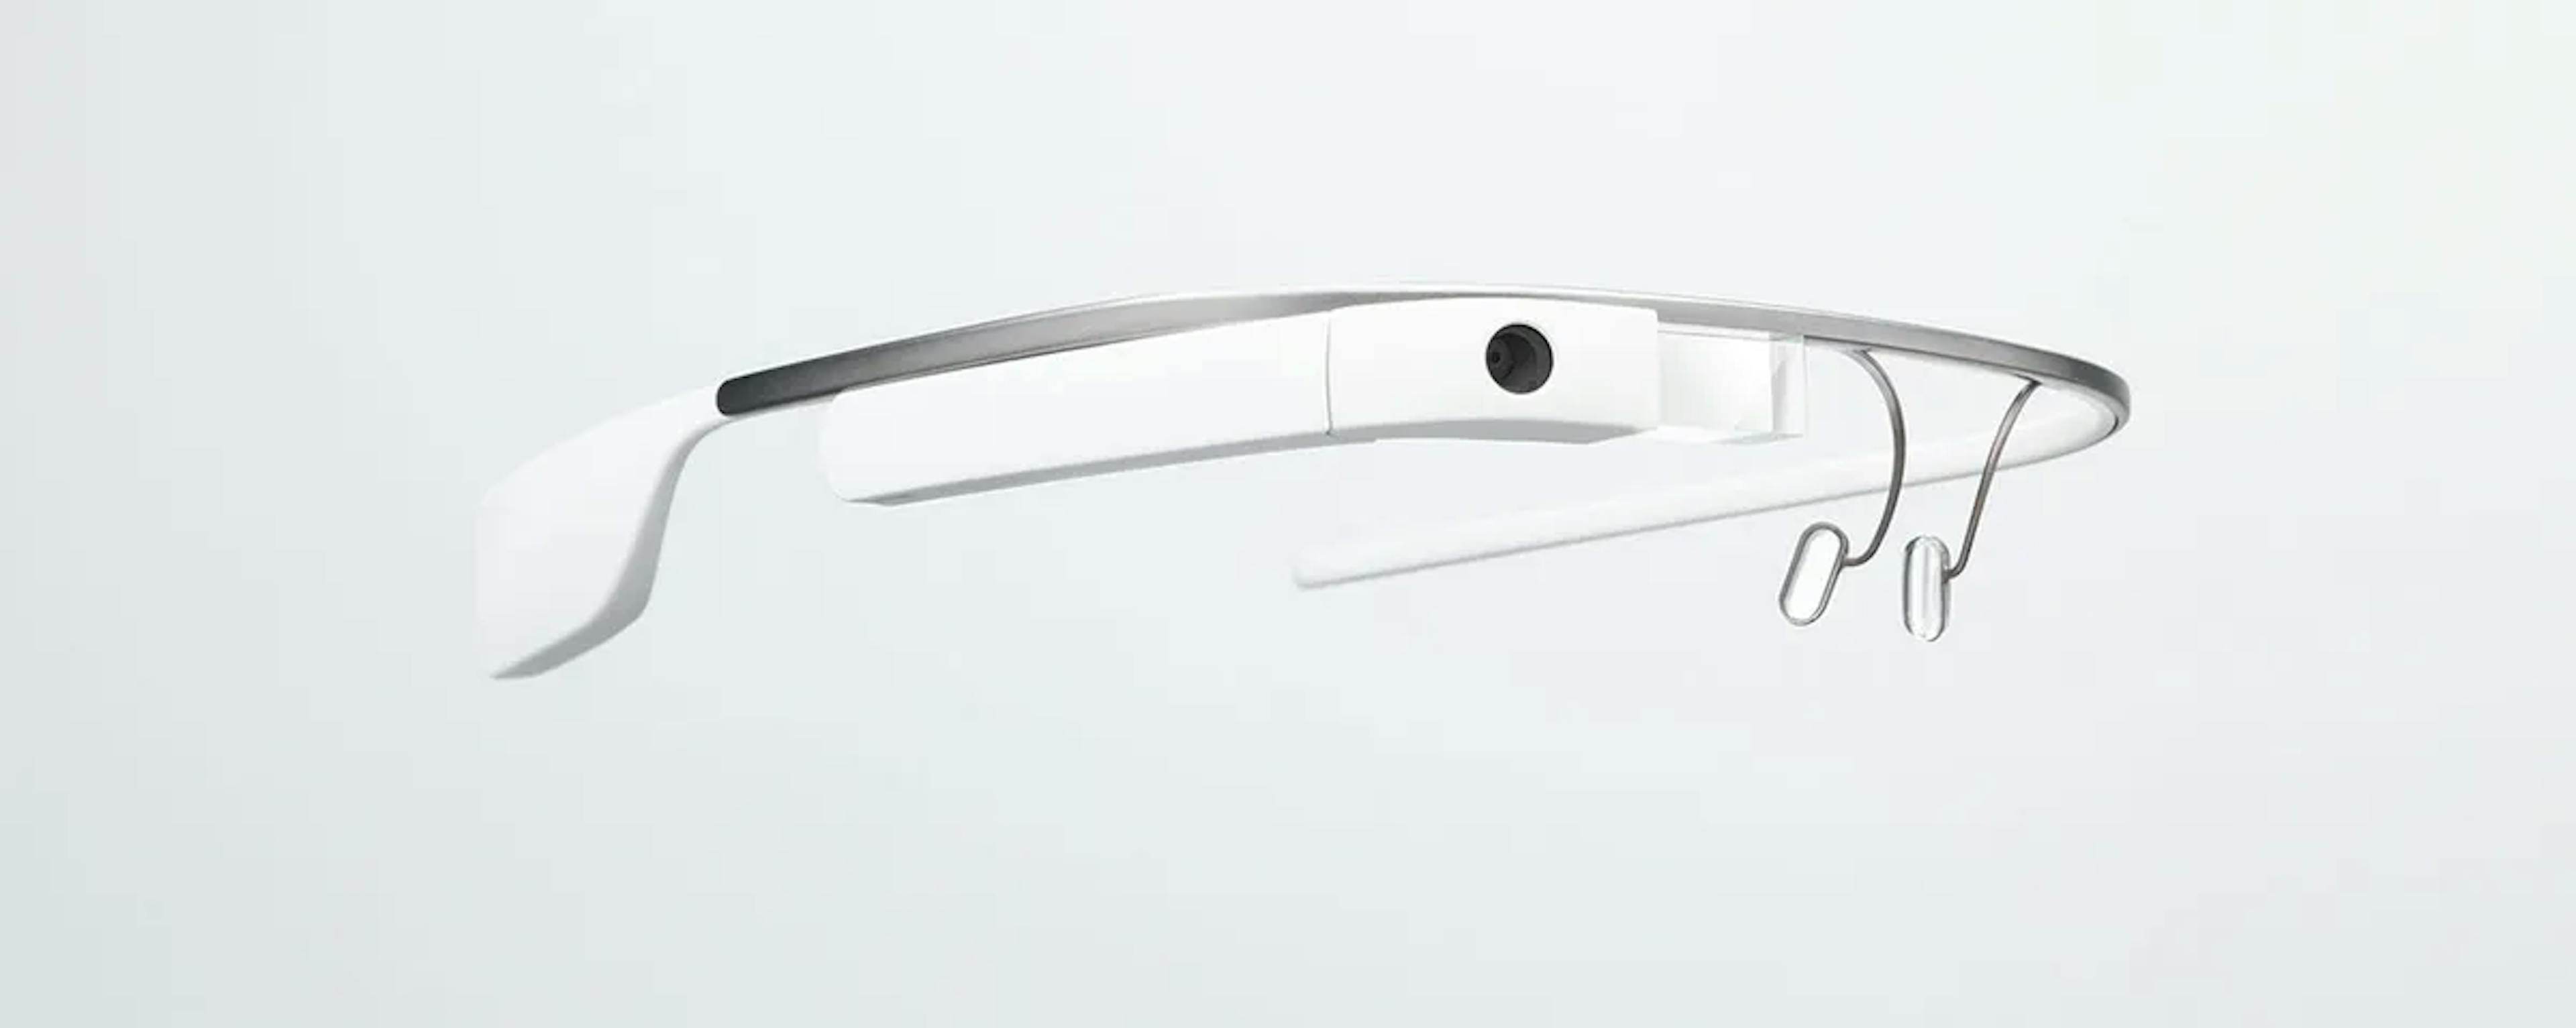  Les Google Glass en question